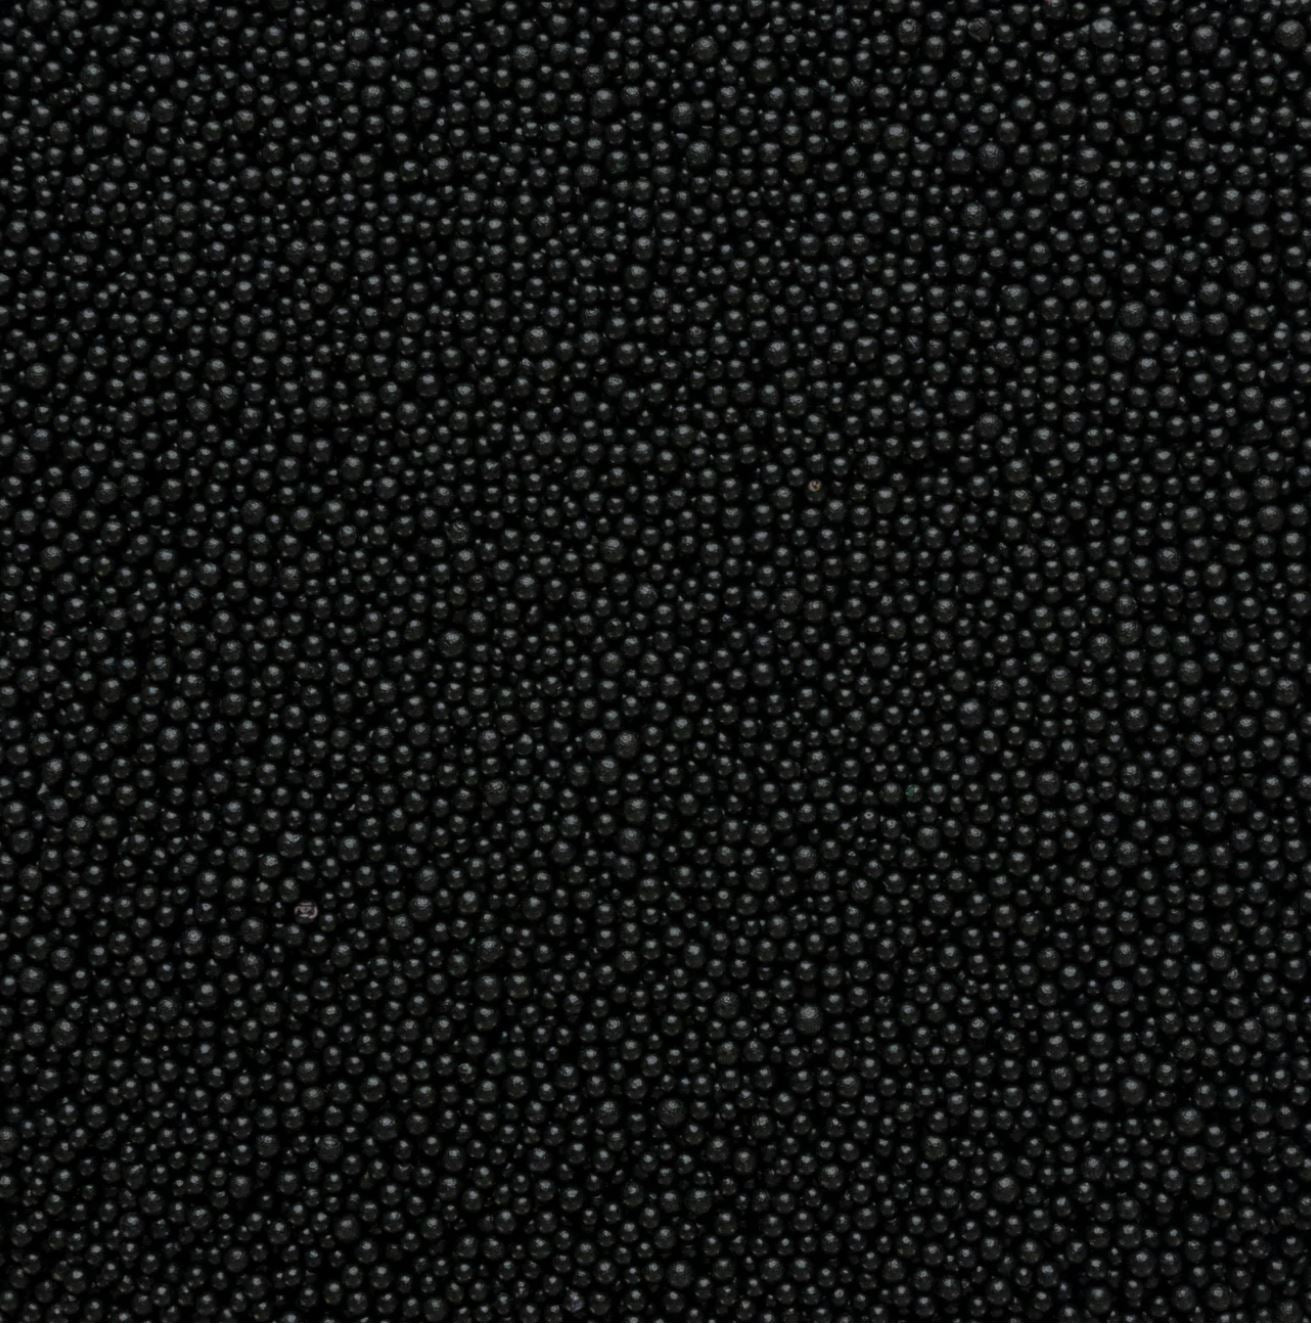 Black Nonpareil Beads